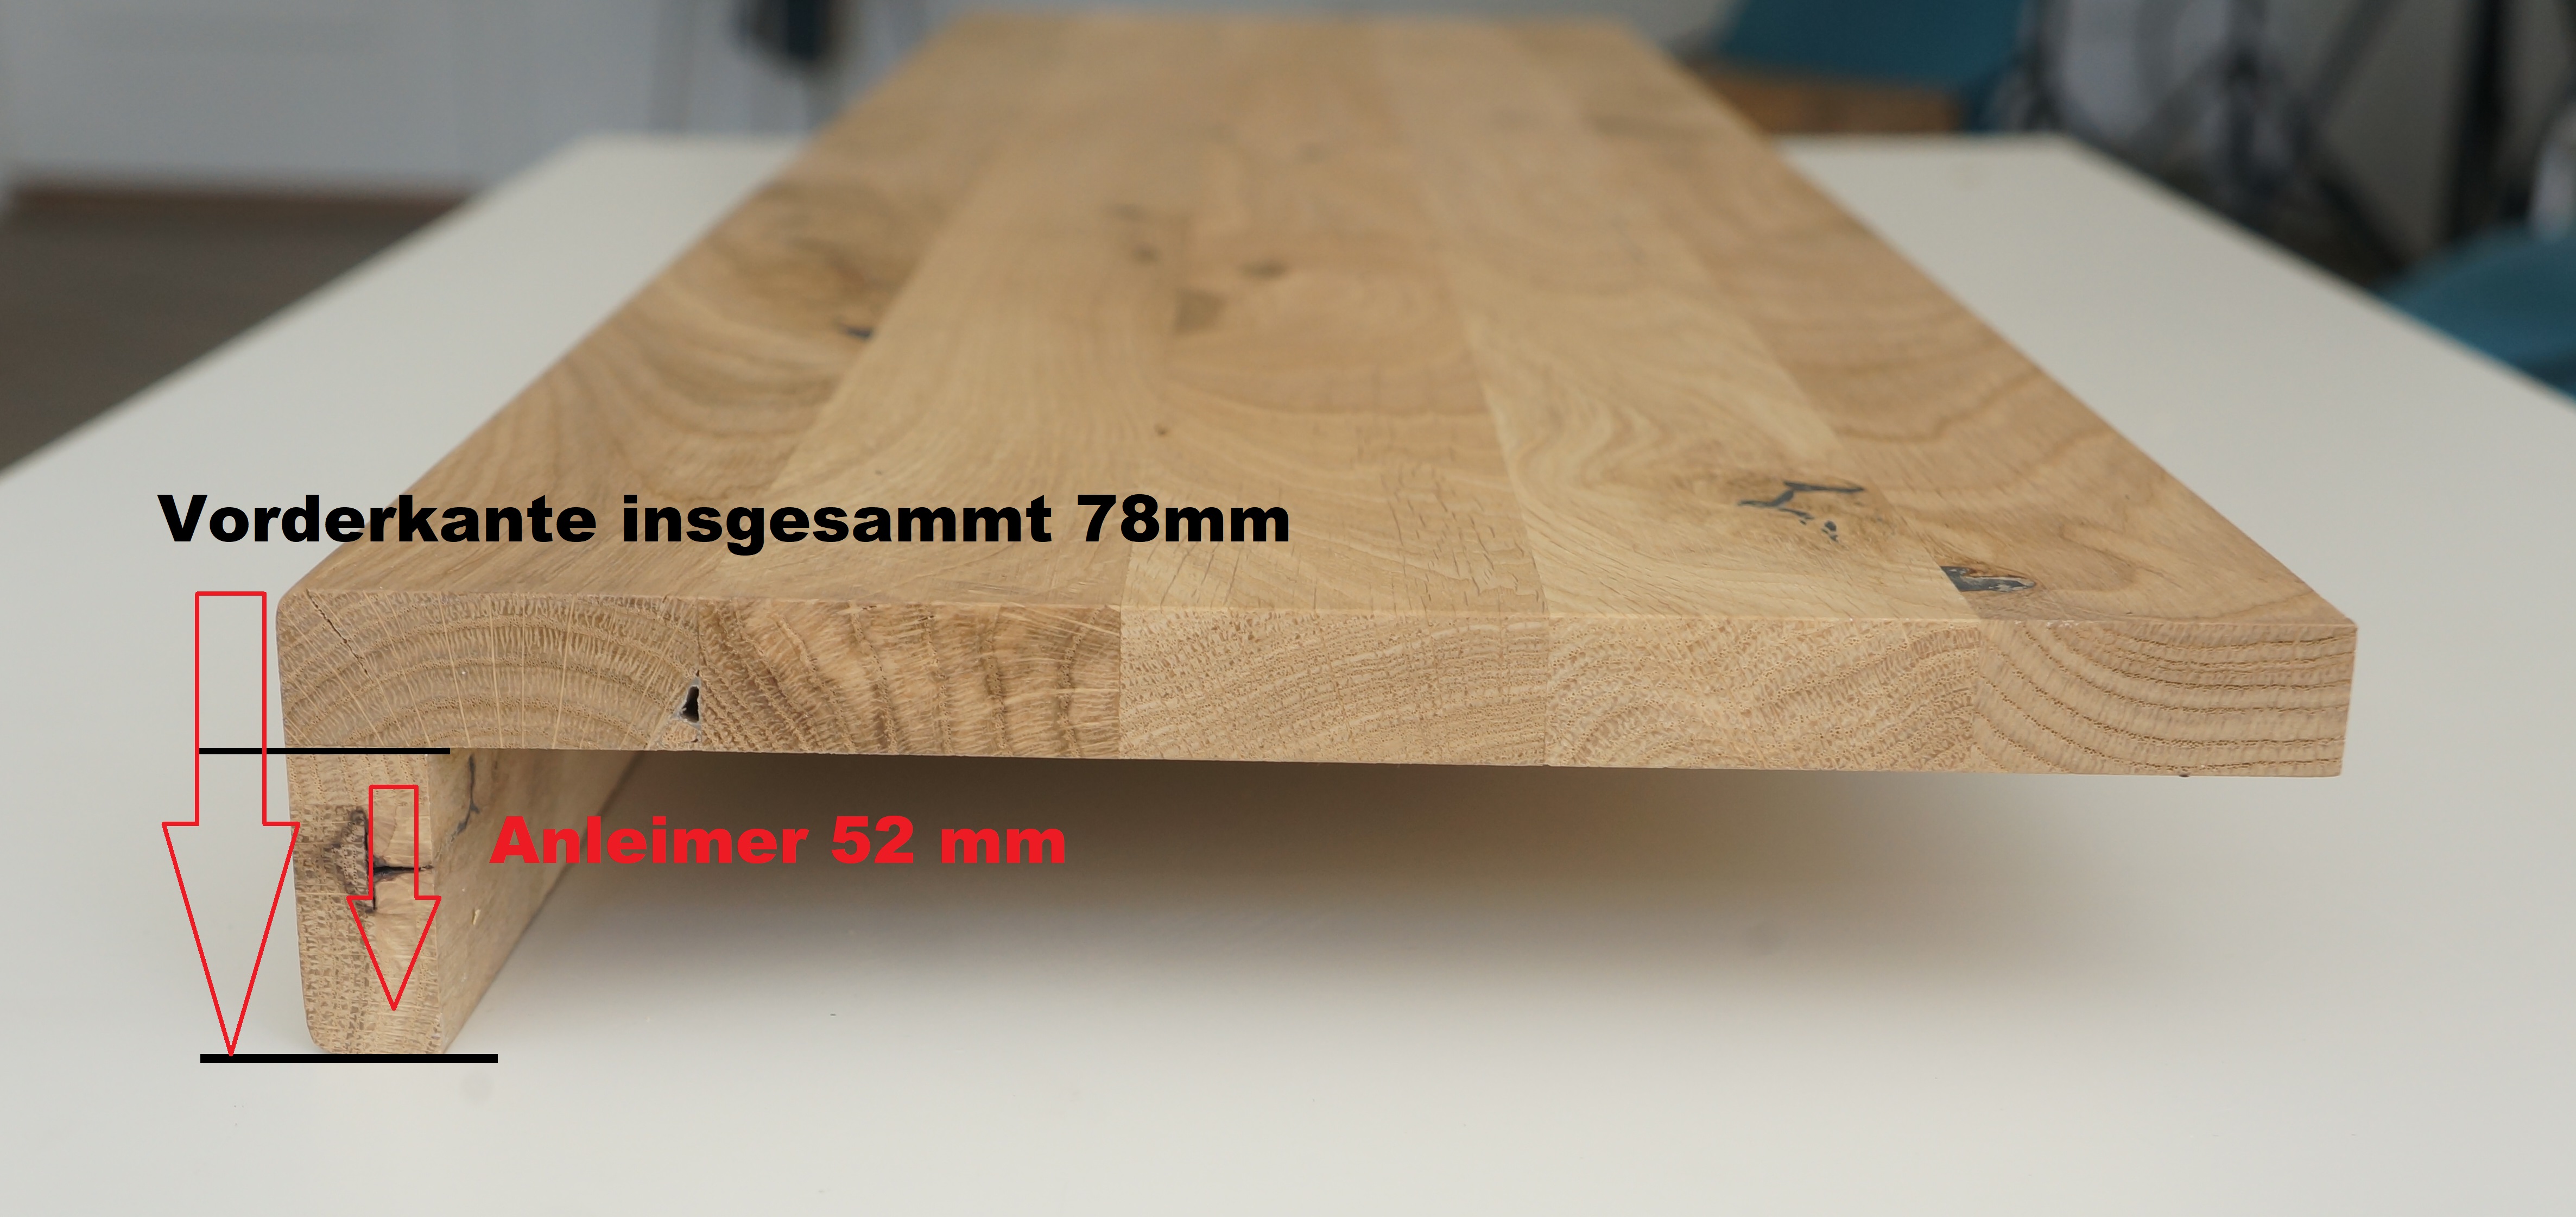 Holz/Alu Stufen-Tritt für ermüdungsfreies StehenIHimmelsbach